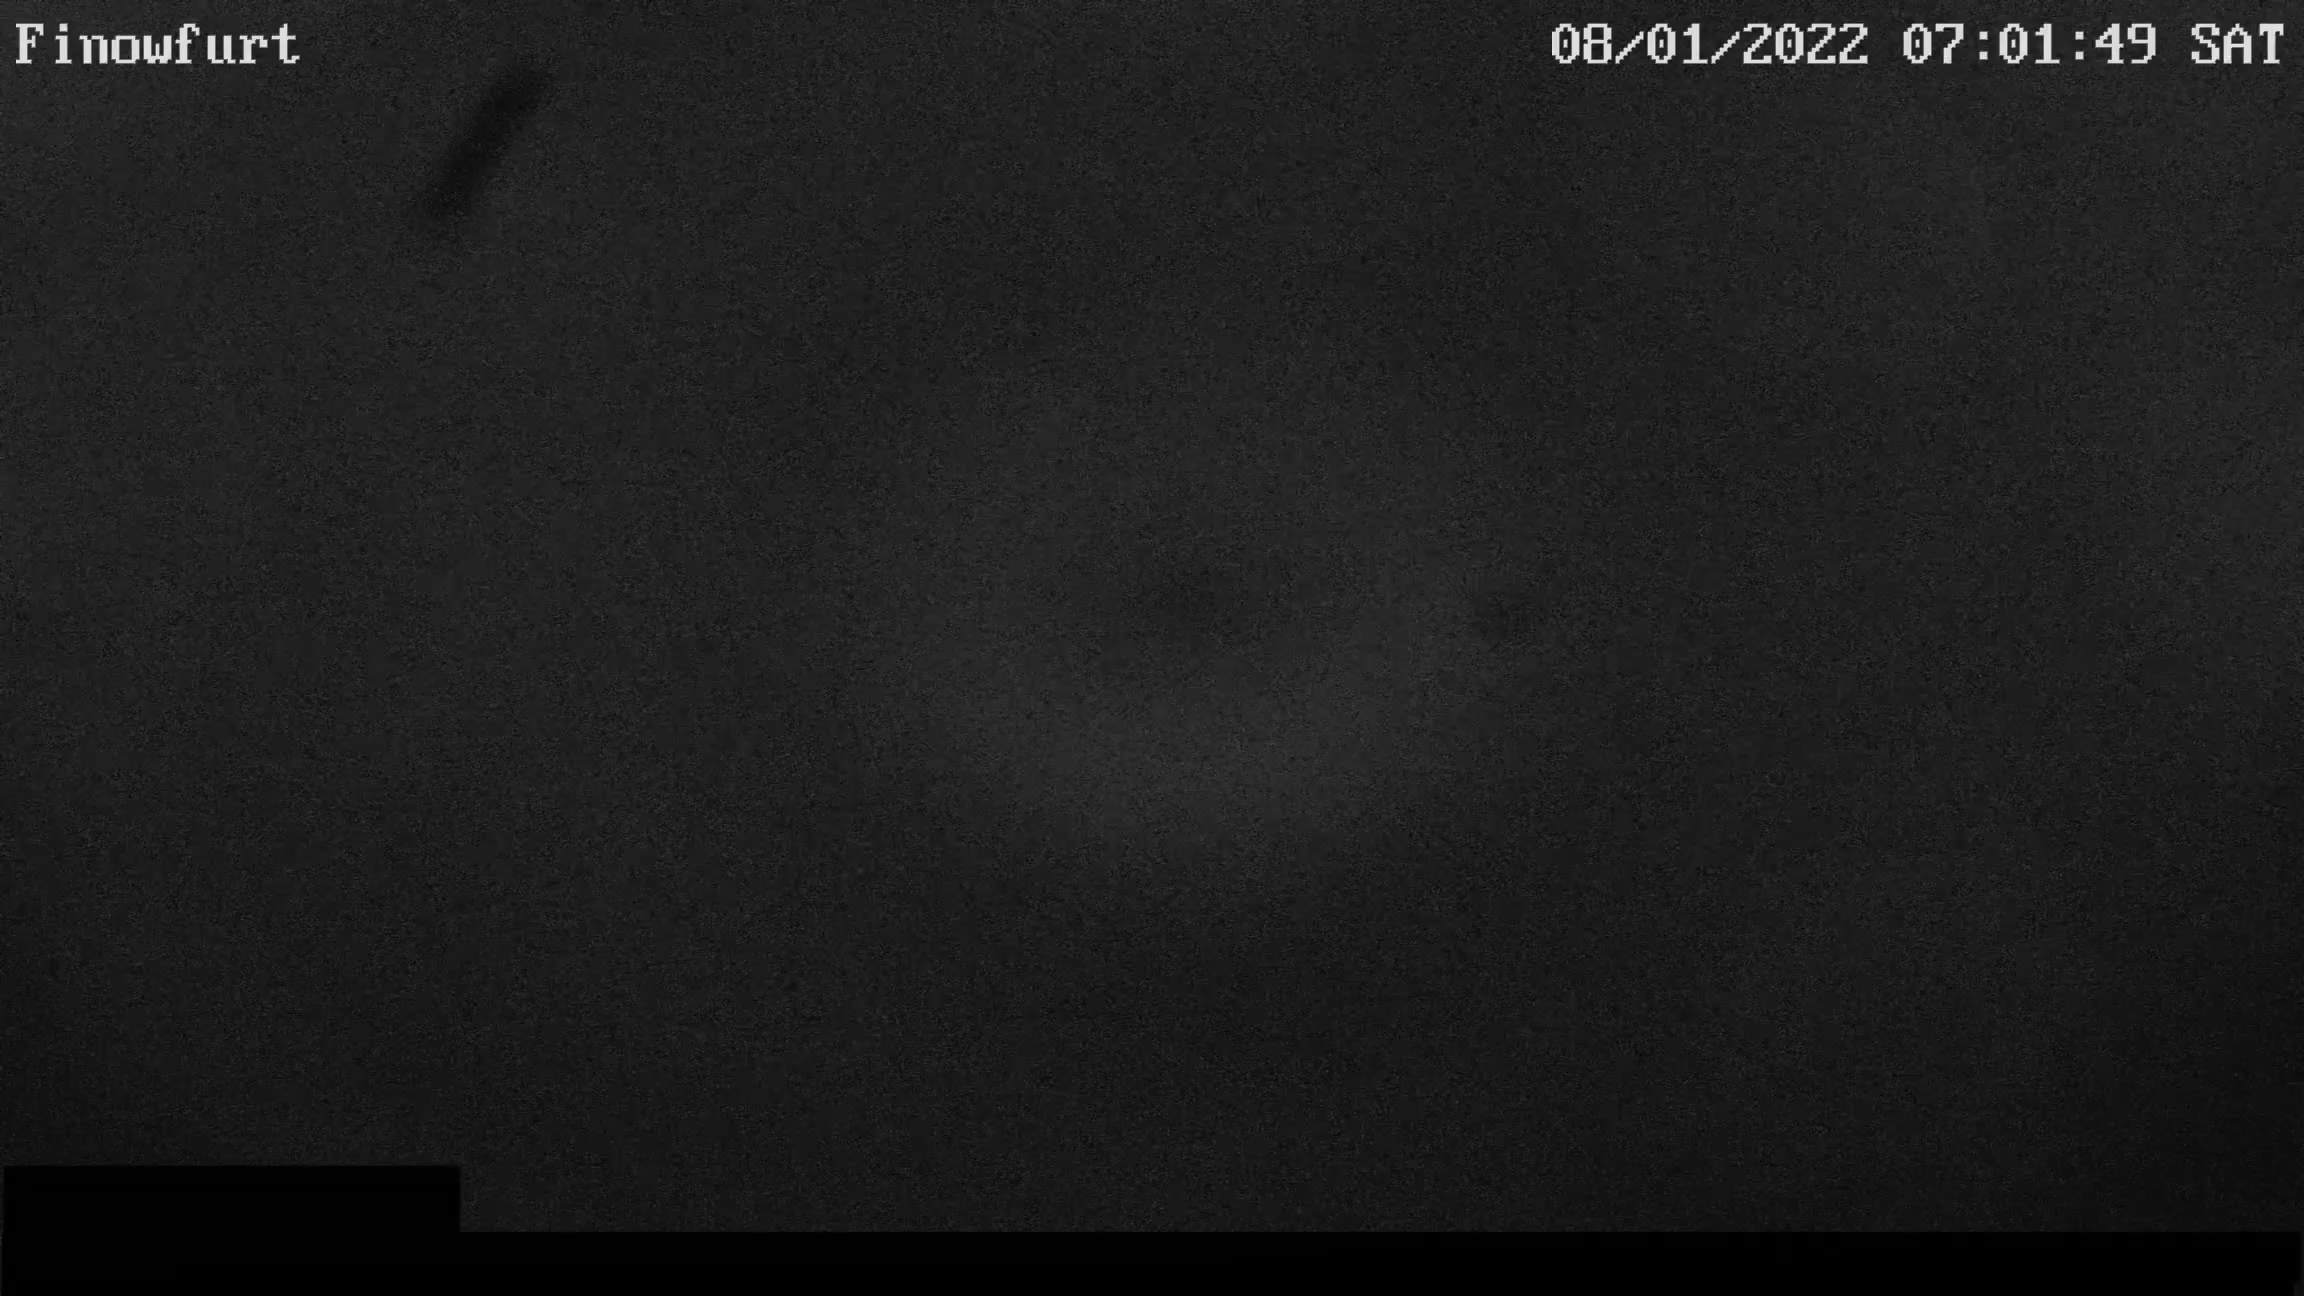 Webcam-Bild von 7 Uhr